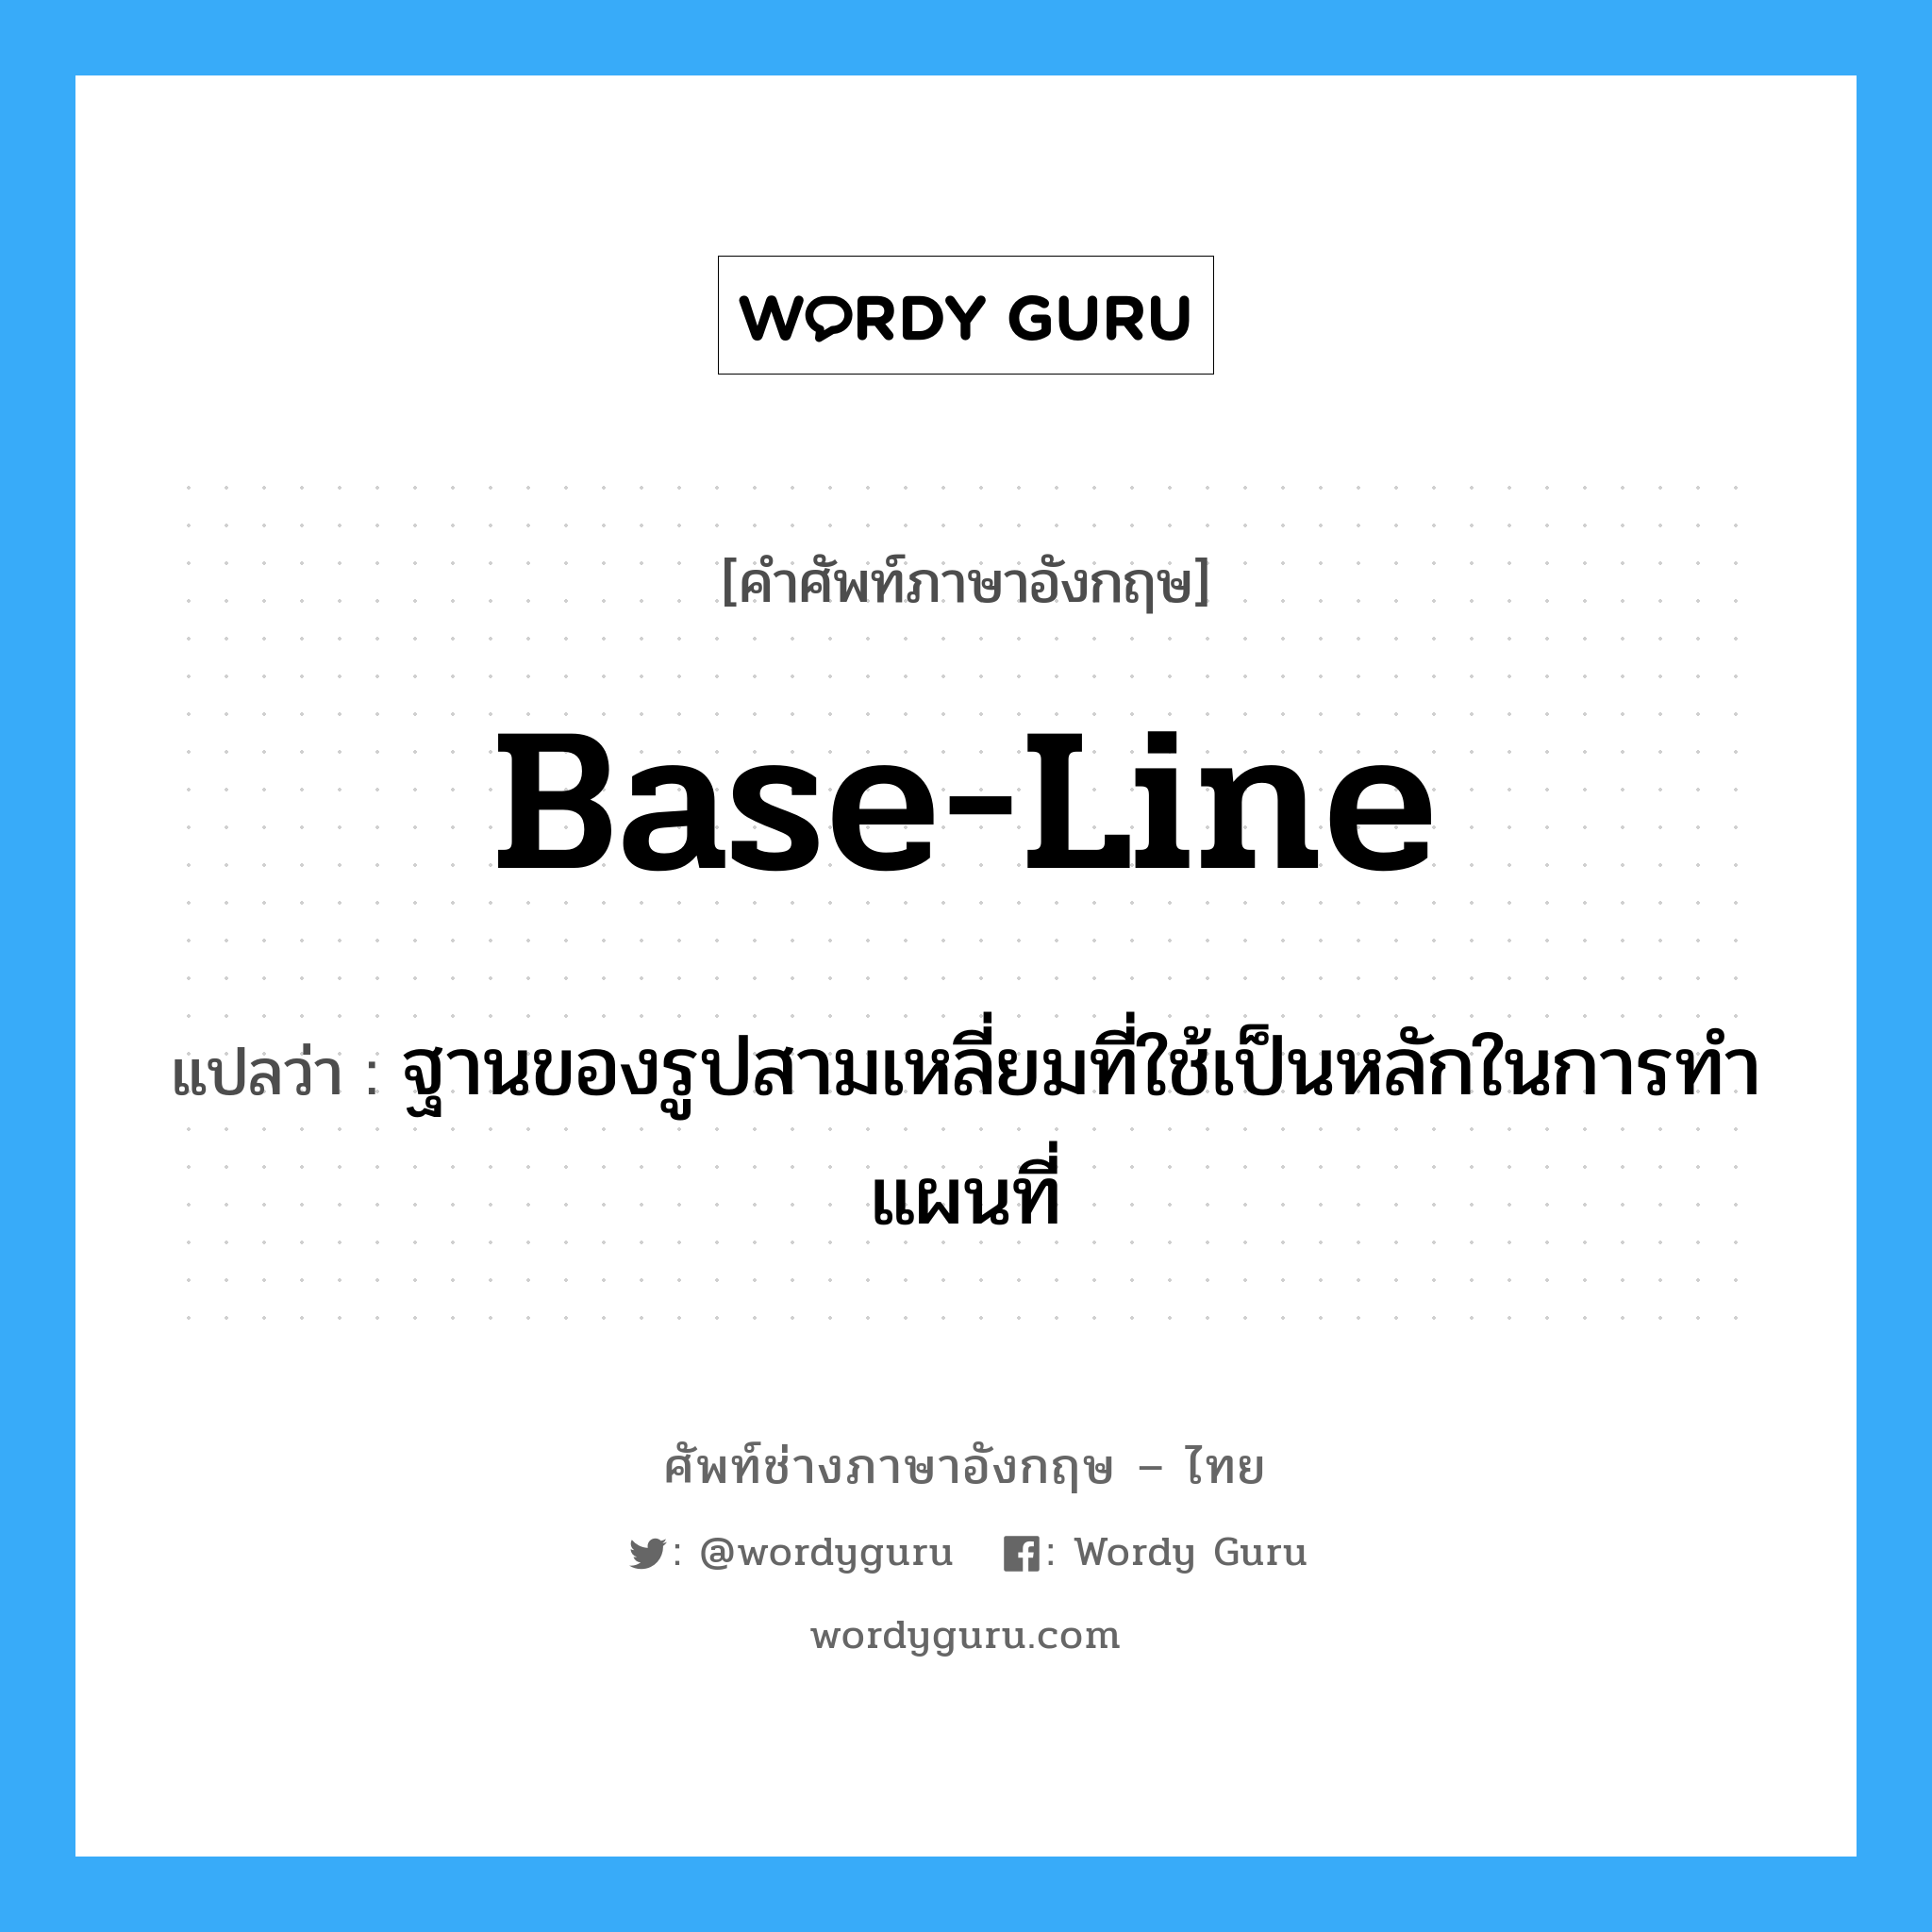 base-line แปลว่า?, คำศัพท์ช่างภาษาอังกฤษ - ไทย base-line คำศัพท์ภาษาอังกฤษ base-line แปลว่า ฐานของรูปสามเหลี่ยมที่ใช้เป็นหลักในการทำแผนที่